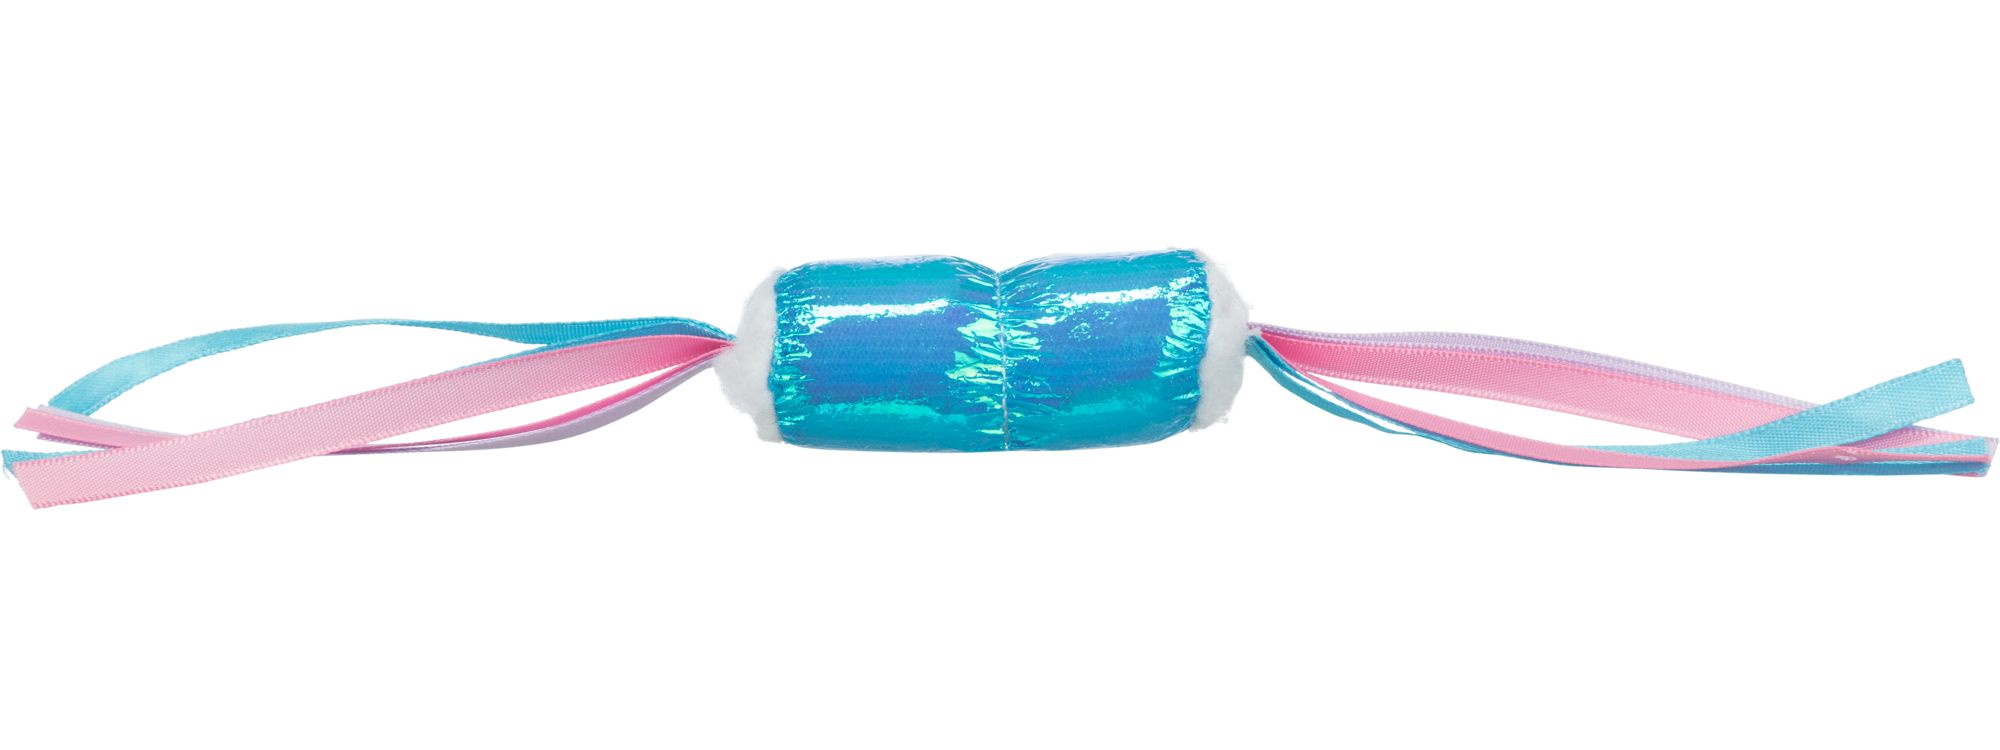 Мяч для кошек Trixie Блестящие конфетки полиэстер, в ассортименте, 7 см